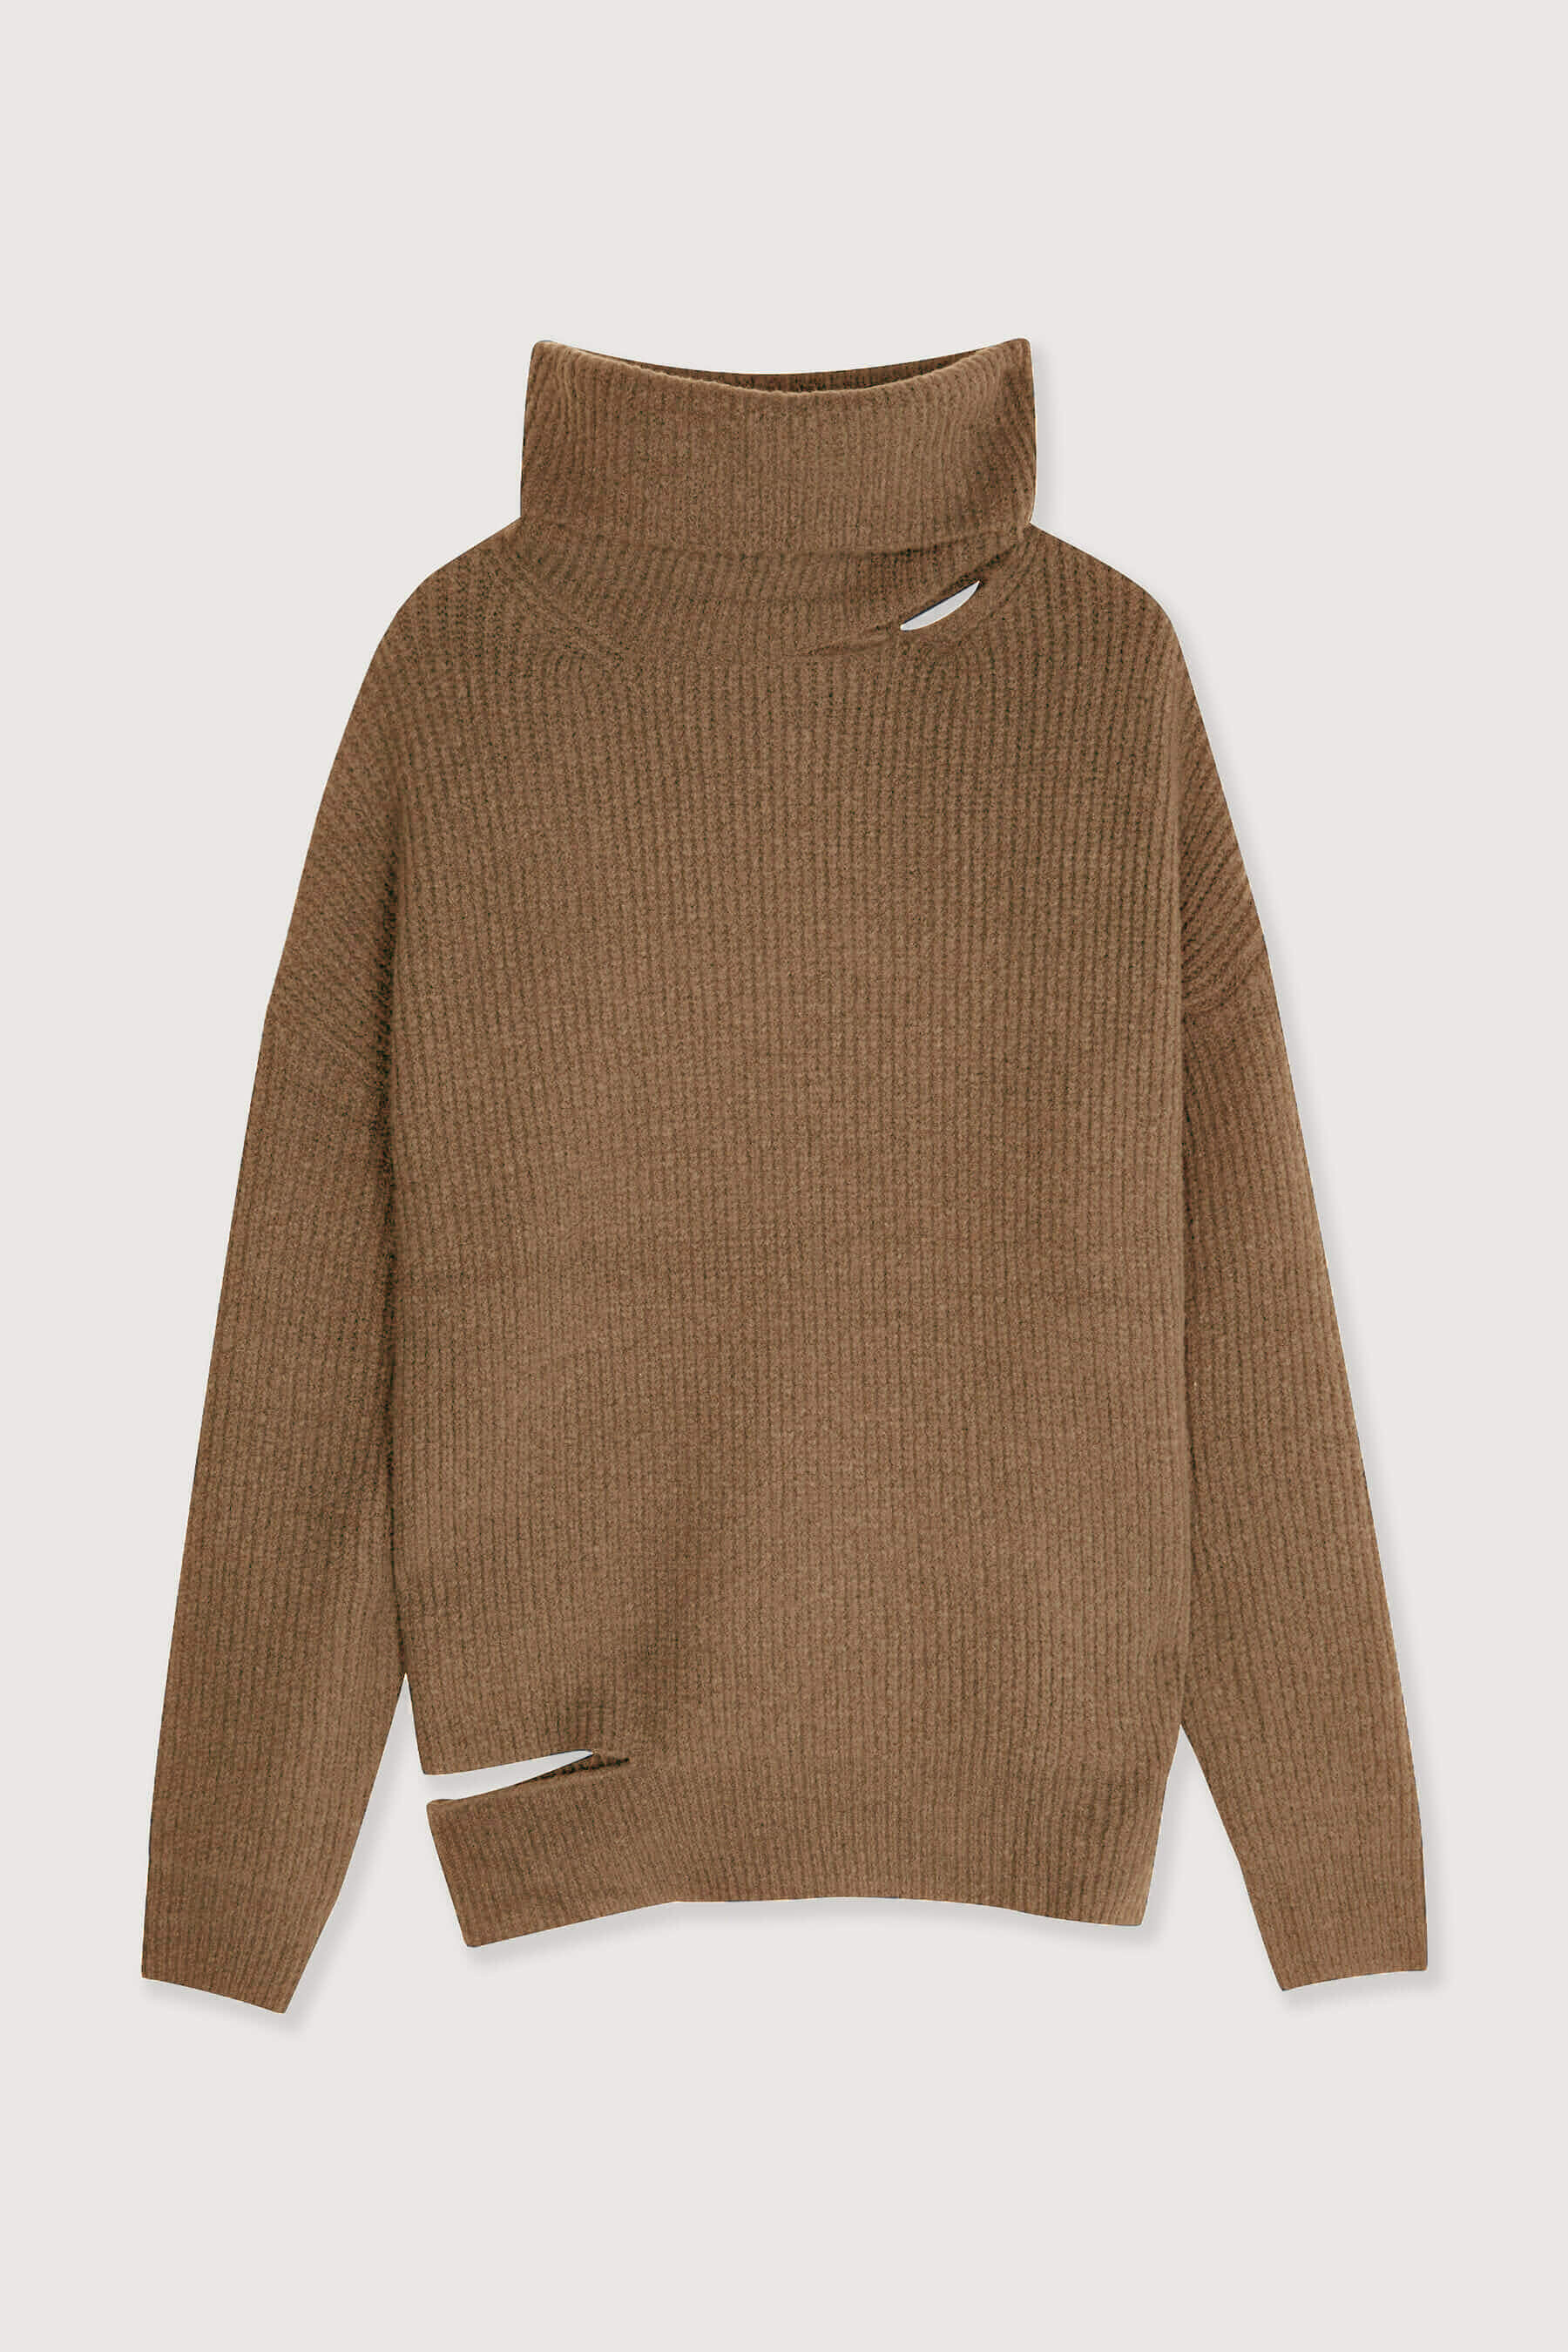 Sweater-6982_Brown-8.jpeg